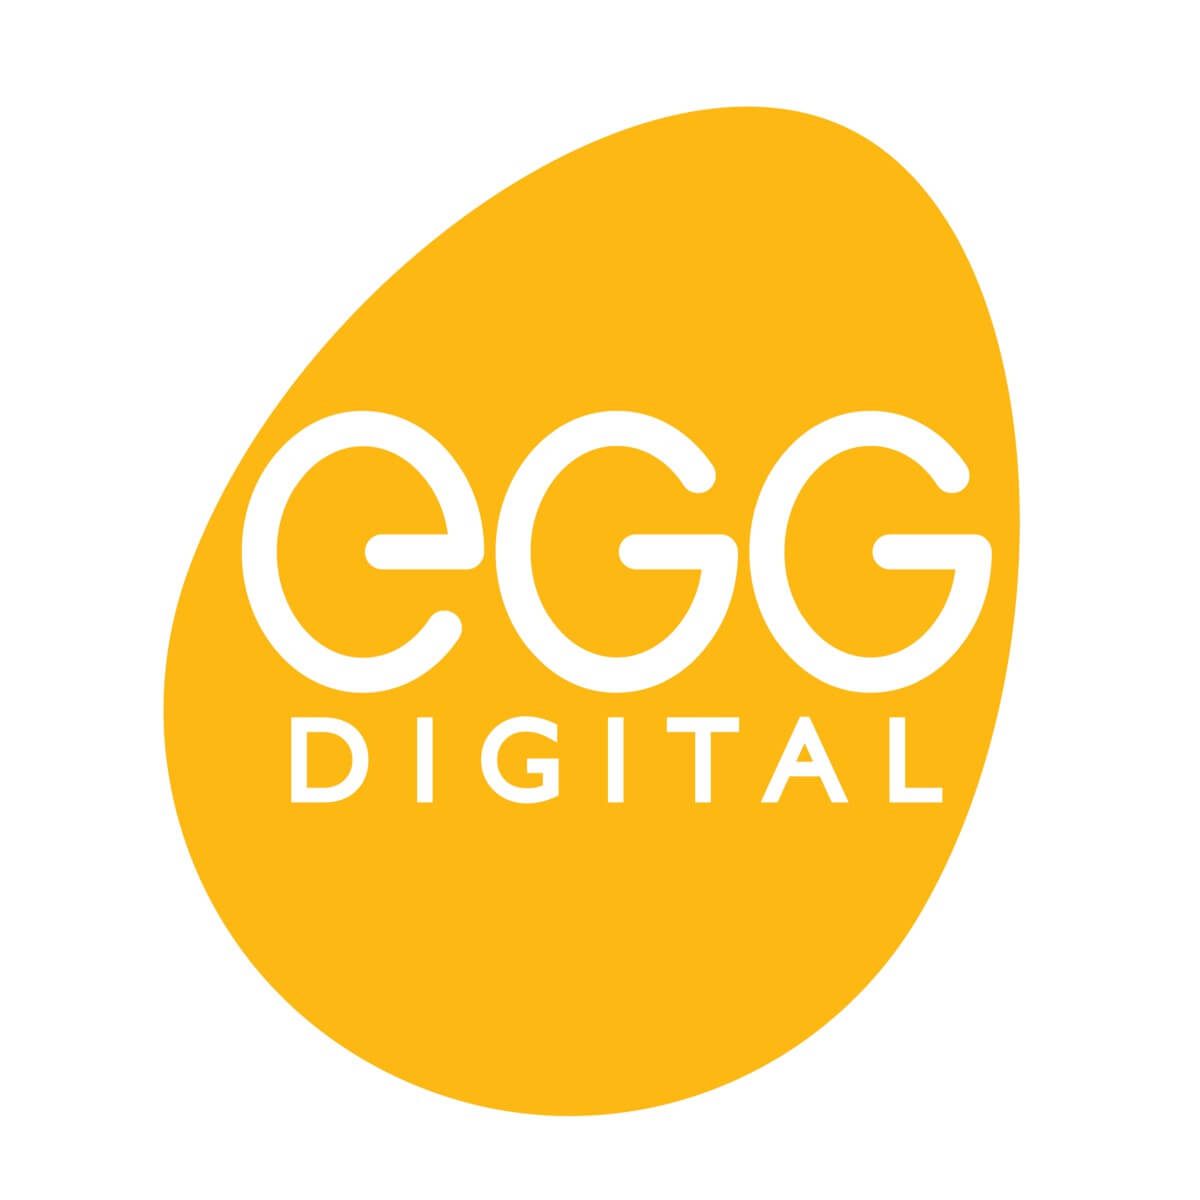 EGG Digital